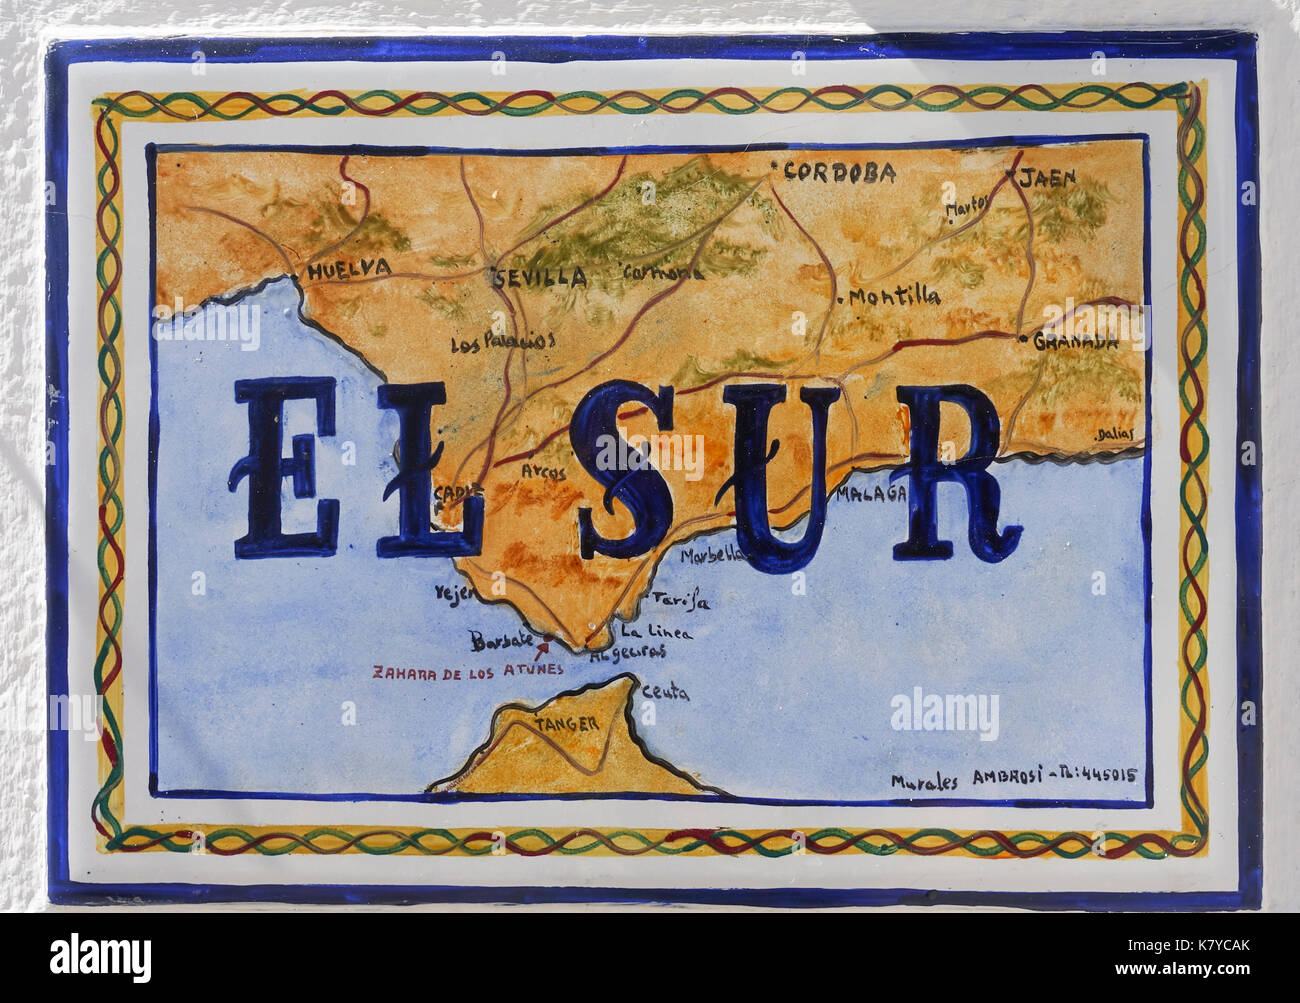 Tuile espagnol El Sur, sur mur avec la carte du sud de l'Espagne, Andalousie, Espagne Banque D'Images